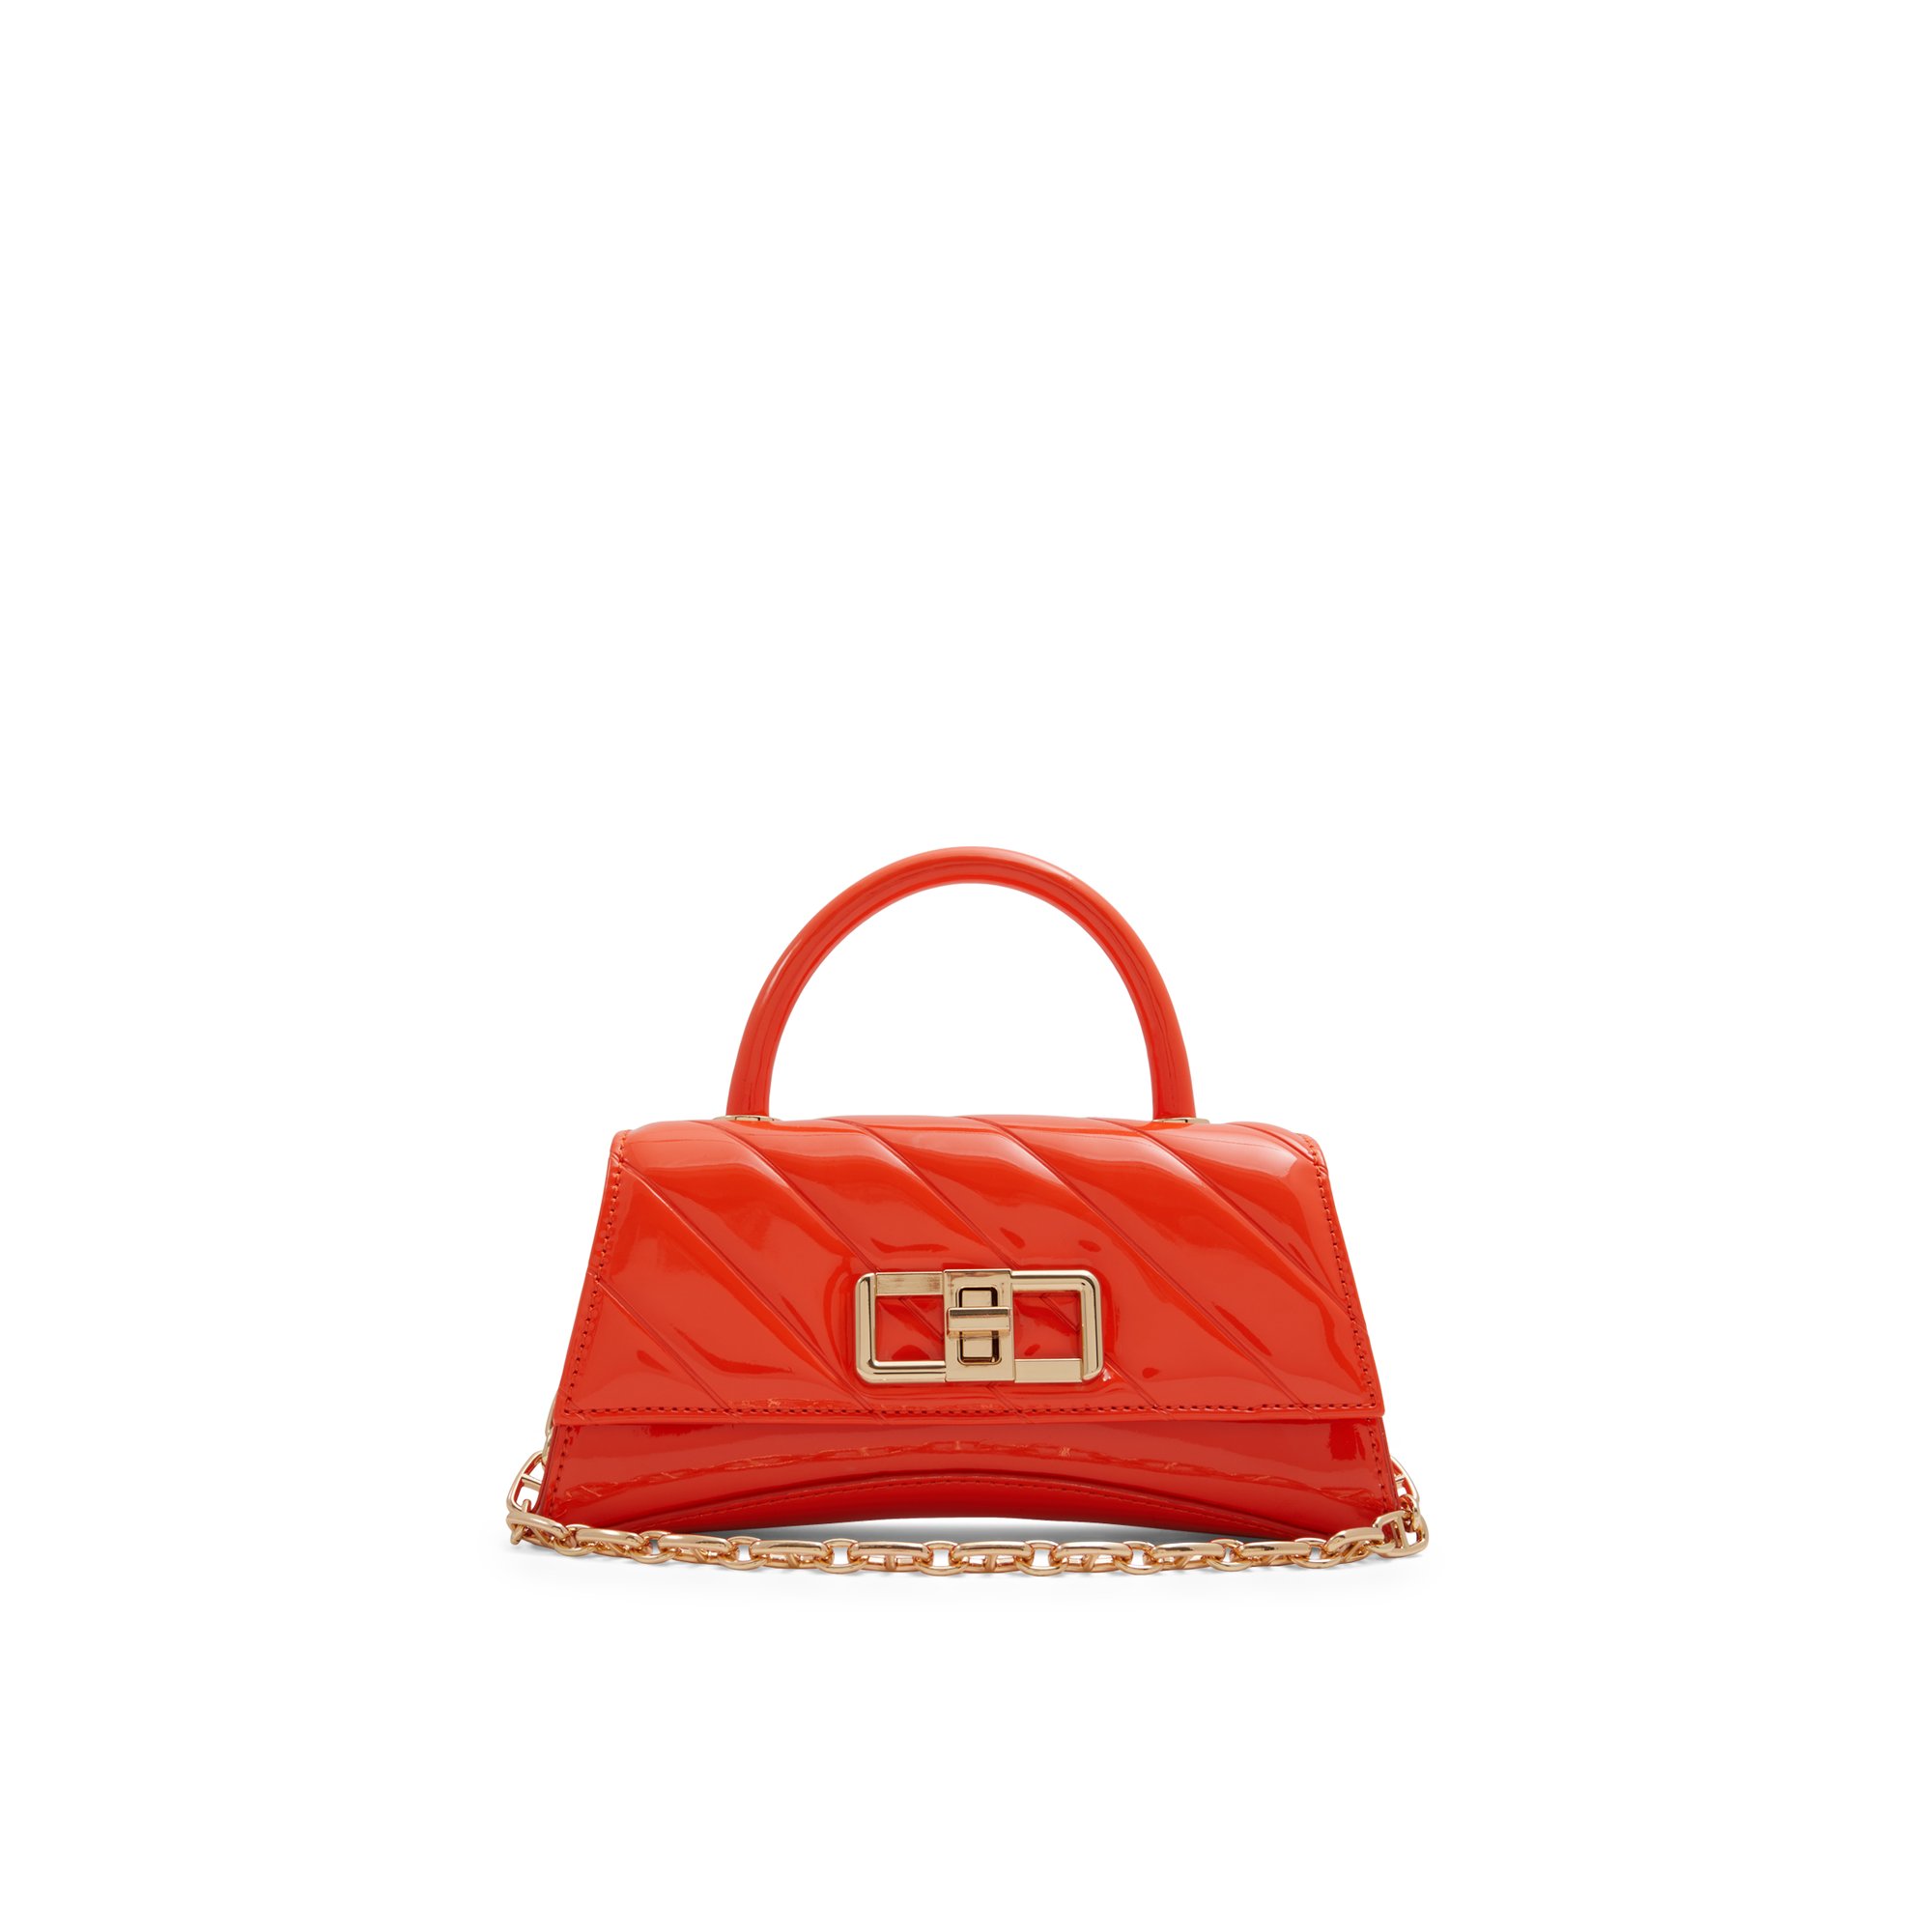 ALDO Landenassix - Women's Top Handle Handbag - Orange